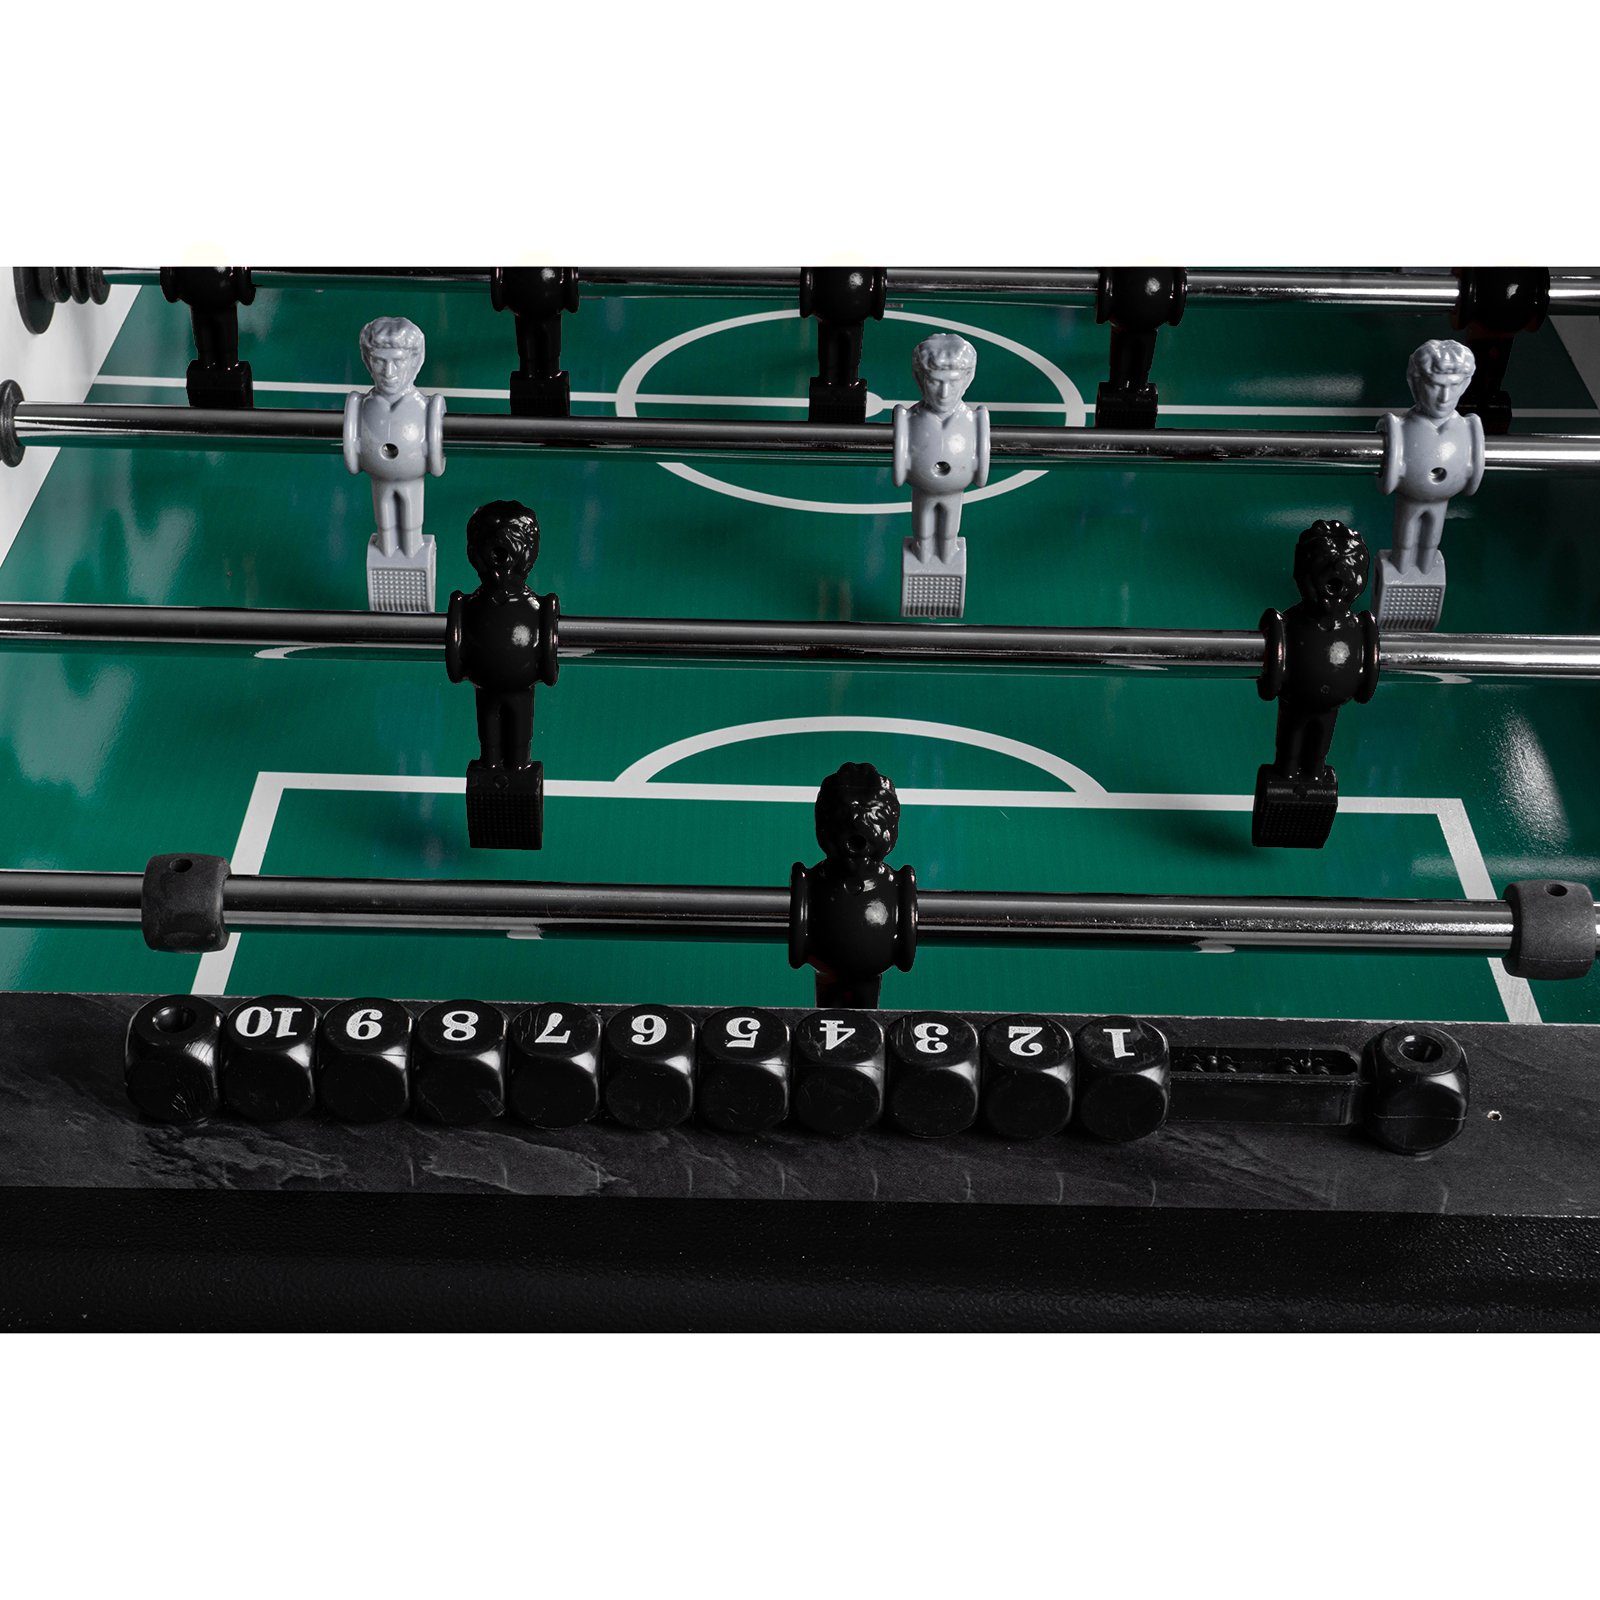 Sport Spieltische RAMROXX Kickertisch Fußball Tischkicker Design Schwarz grünes Spielfeld Figuren Schwarz Grau 80kg